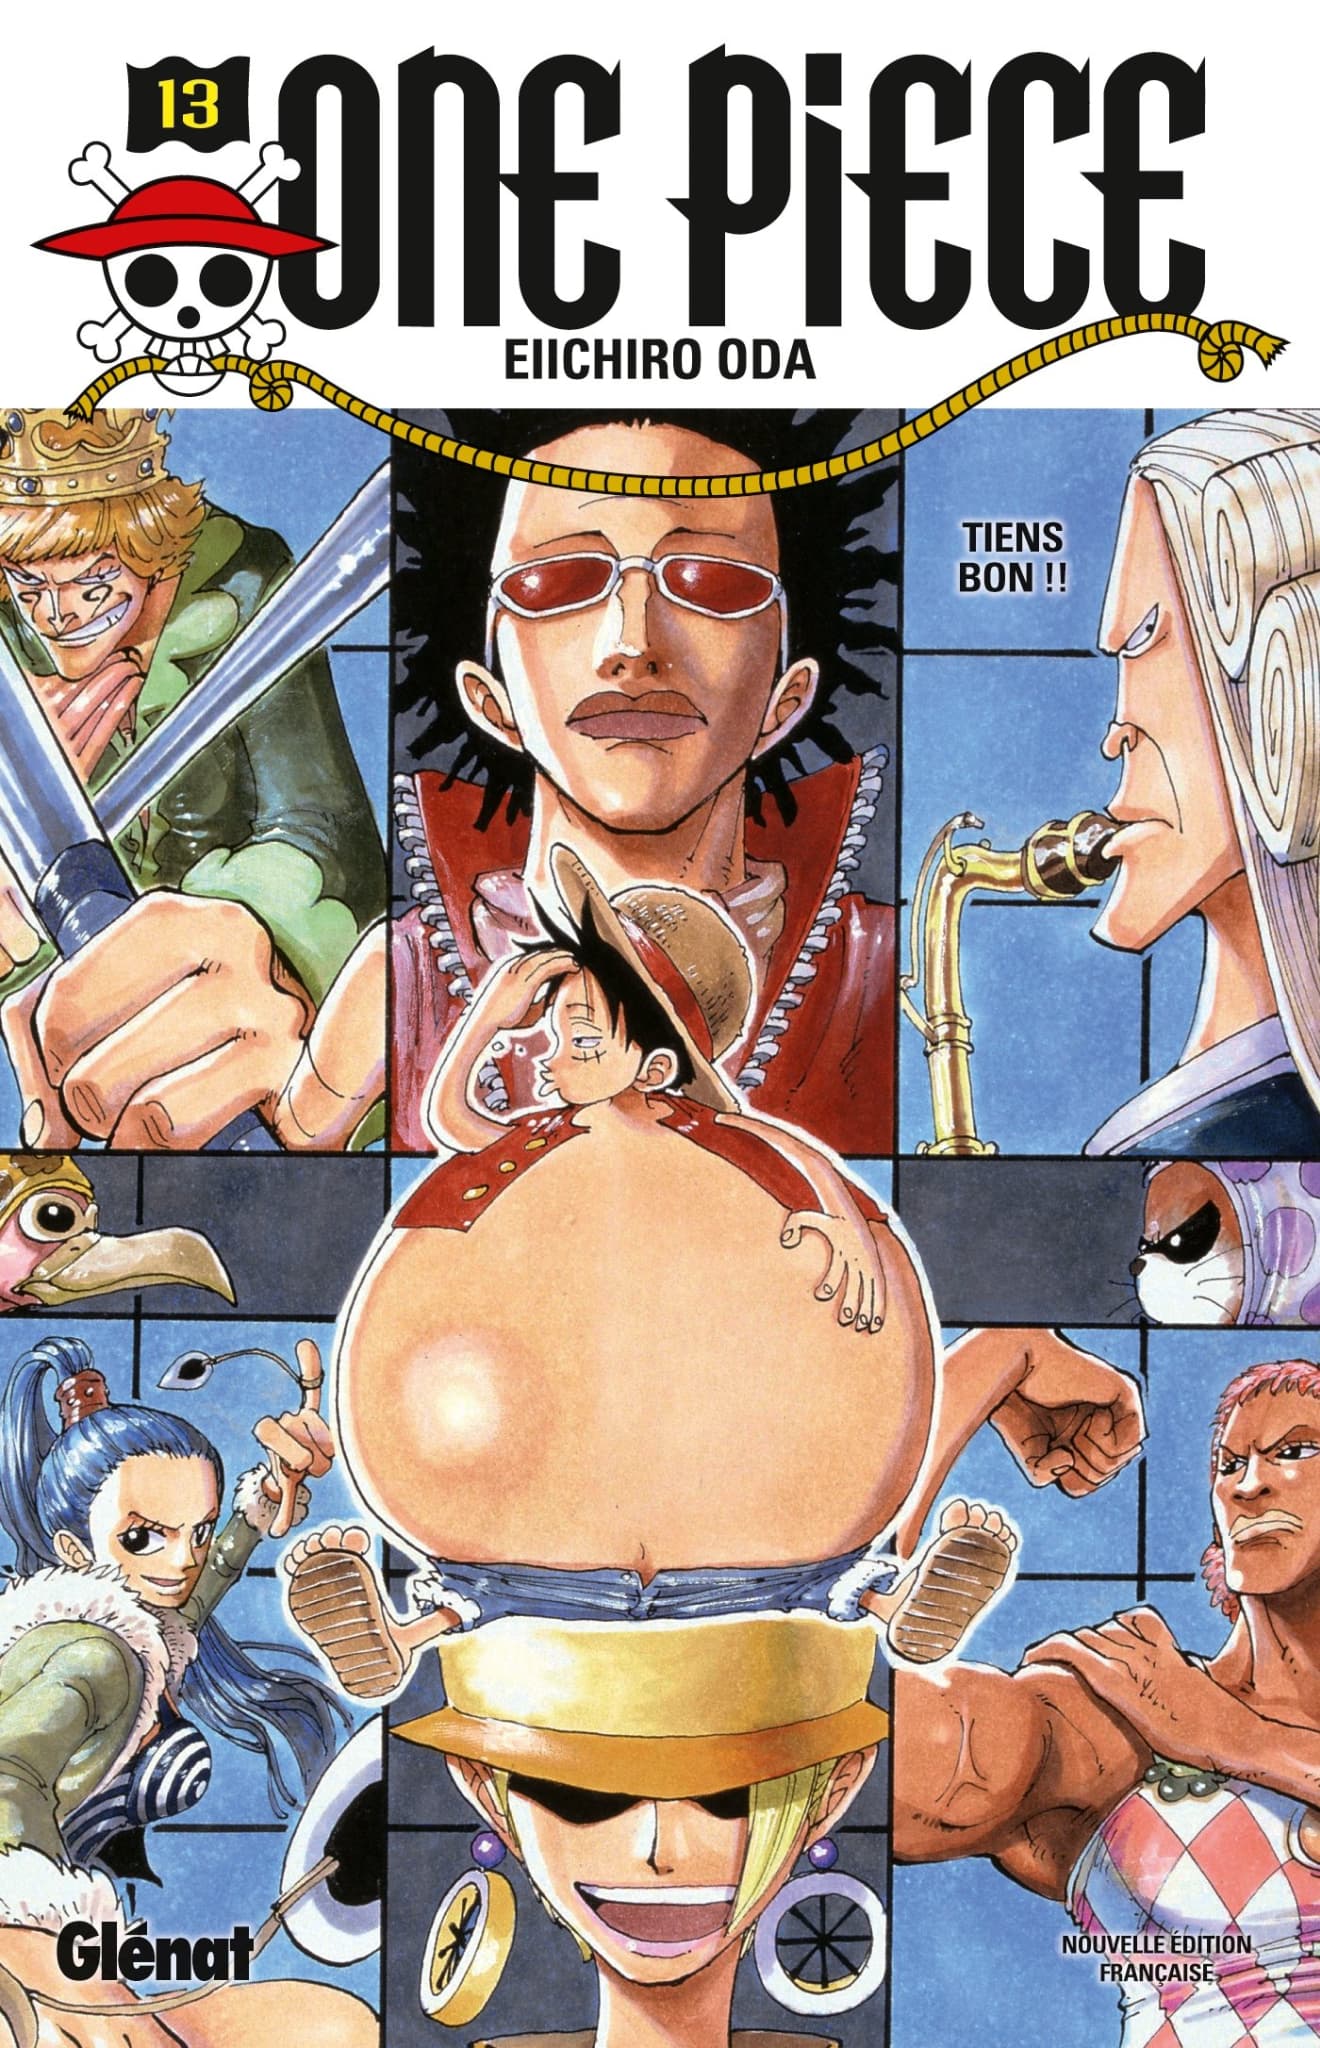 One Piece a 25 ans: on a classé du pire au meilleur les arcs du